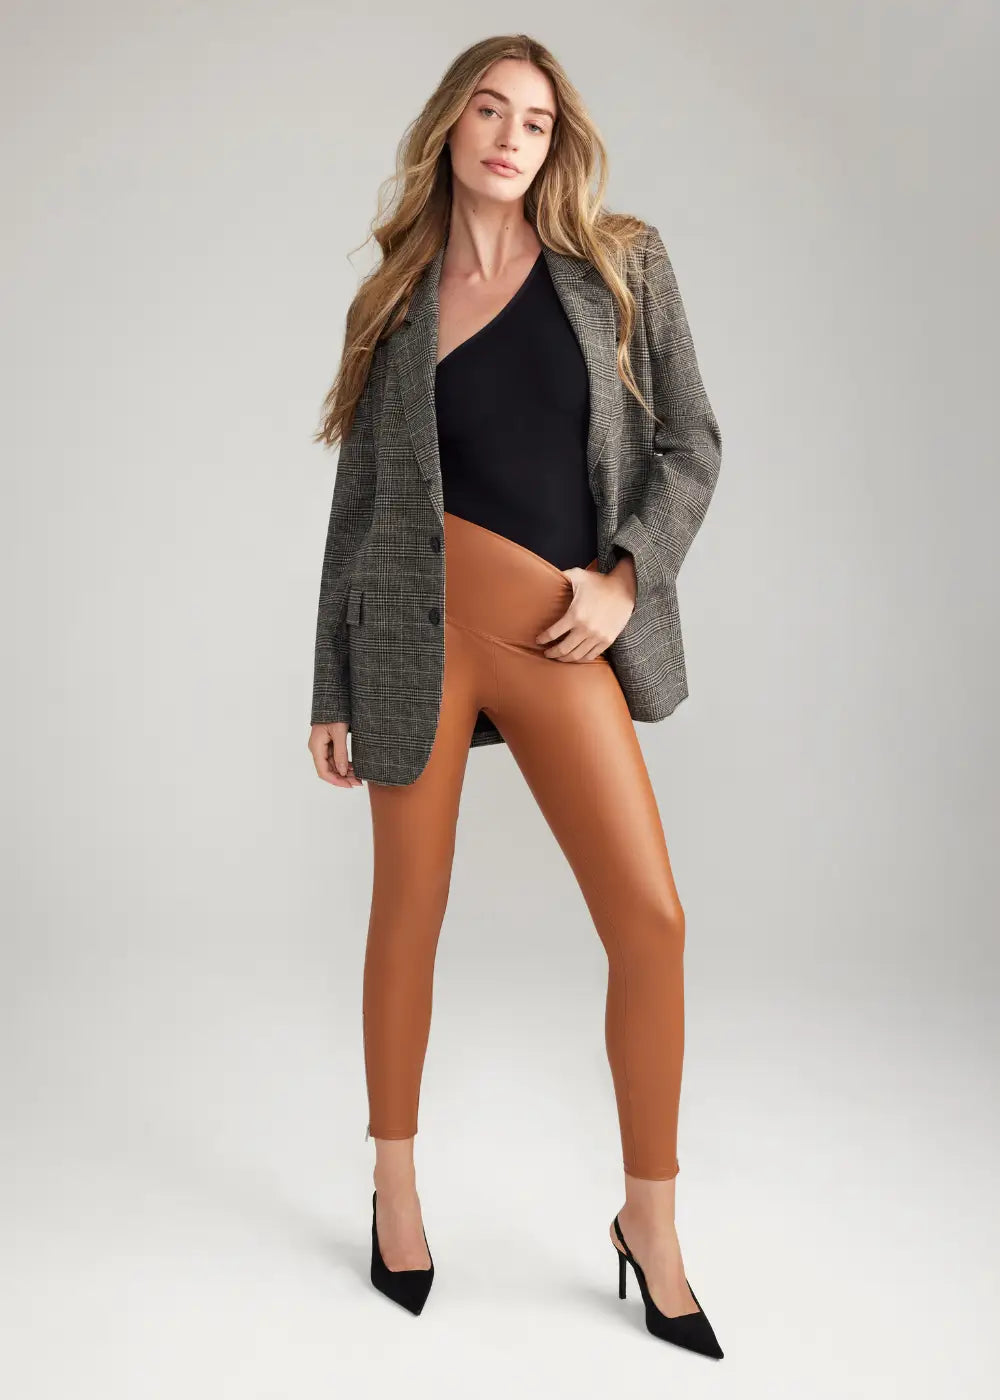 Yummie Faux Leather Tummy Control Leggings, Women's Fashion